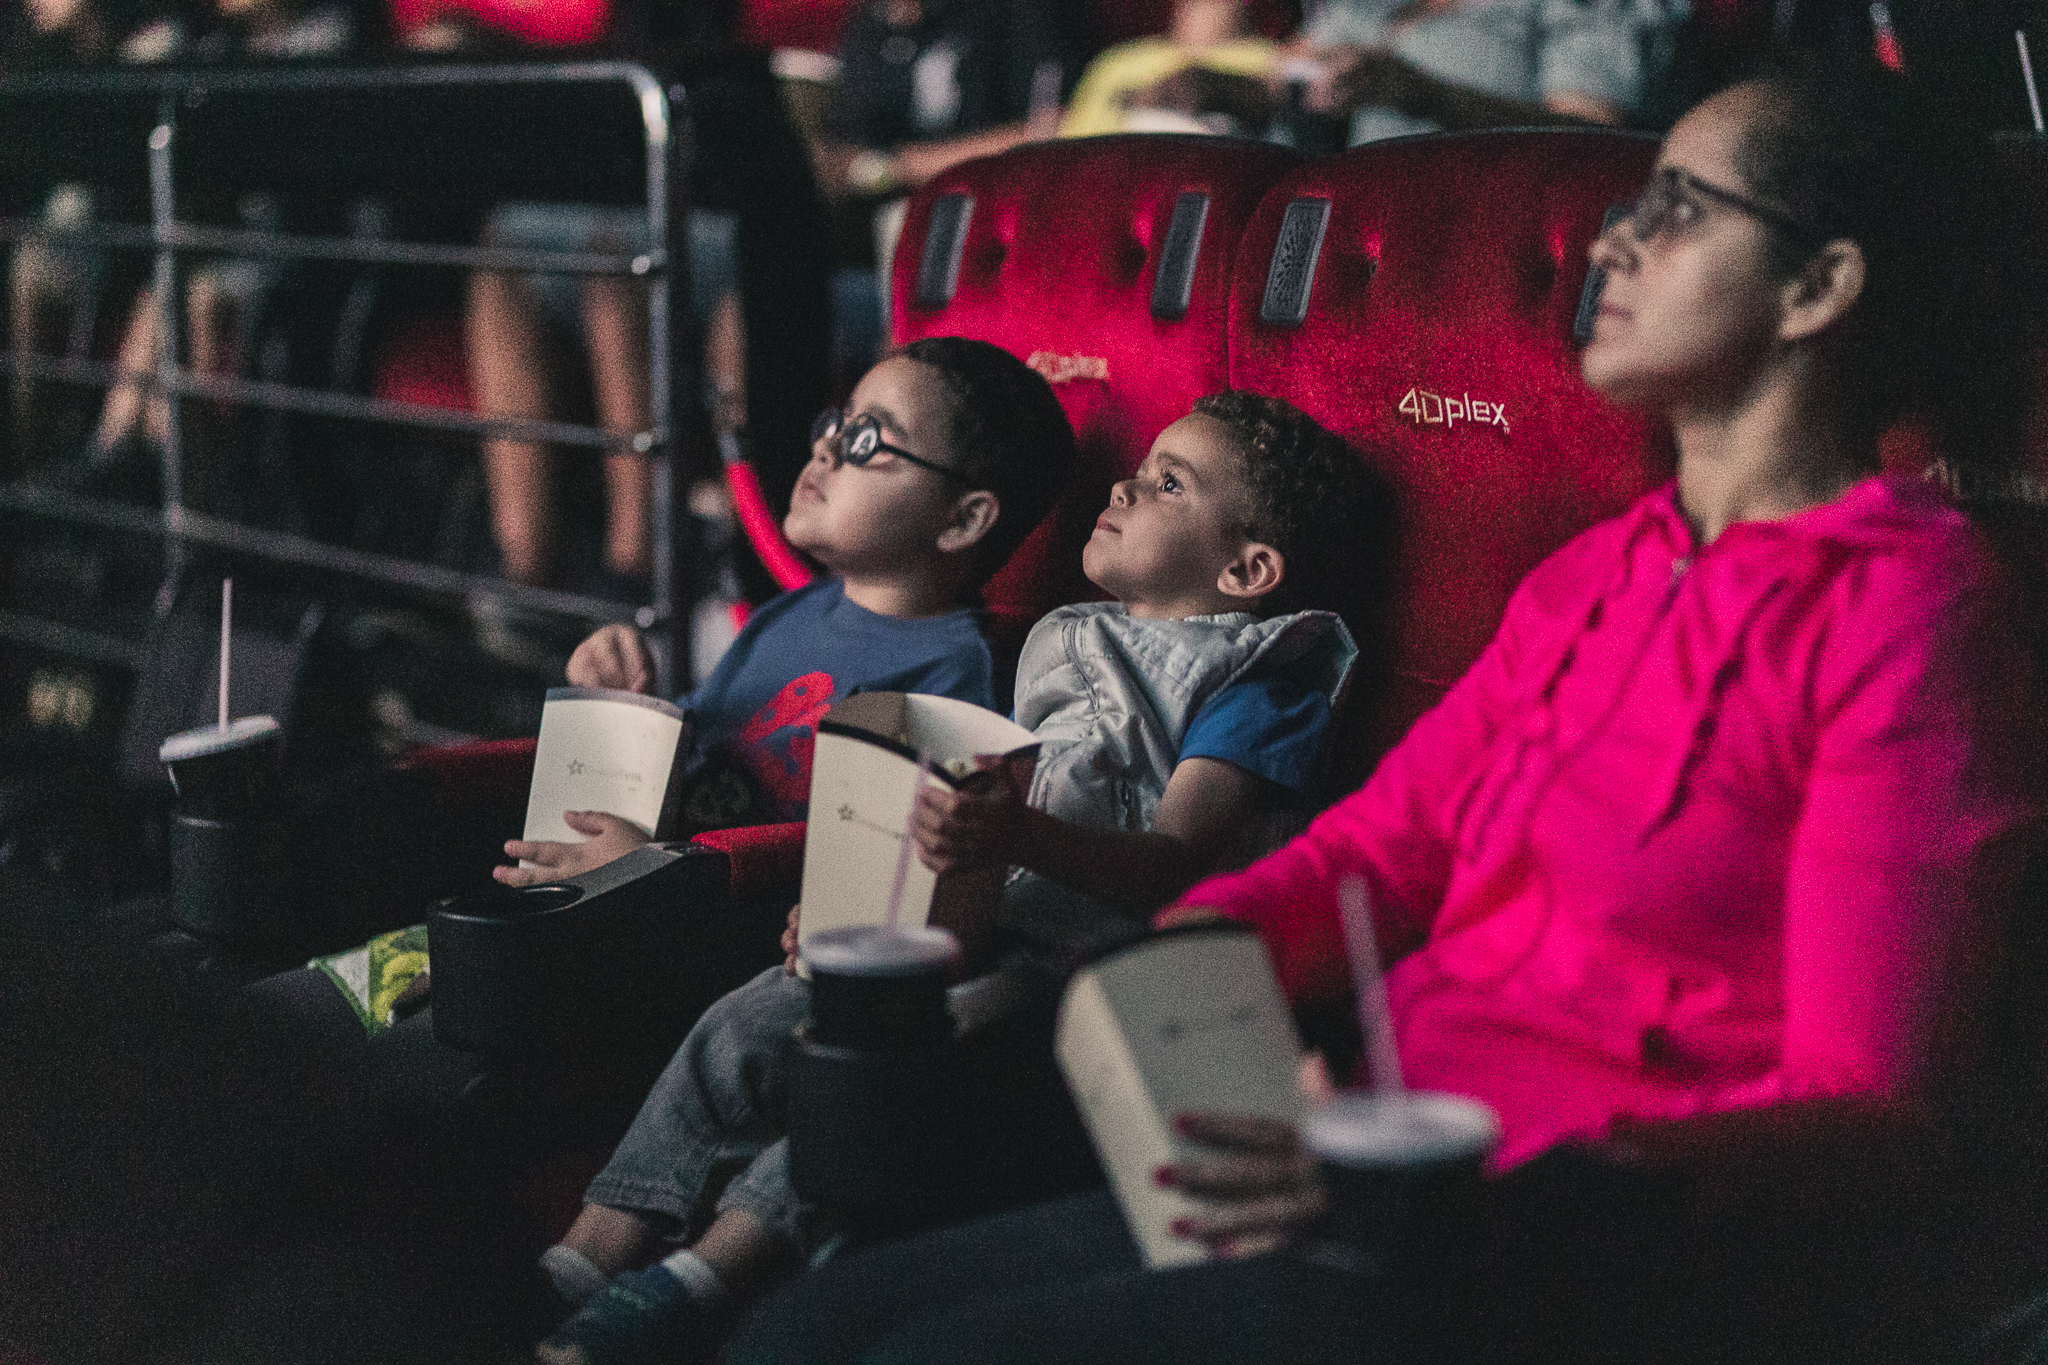 Imagem de uma sessão de cinema inclusivo promovido pelo Telecine. Em destaque, há dois meninos e uma mulher sentados em poltronas de cinema. Eles olham para frente e estão segurando embalagens de pipoca nas mãos.